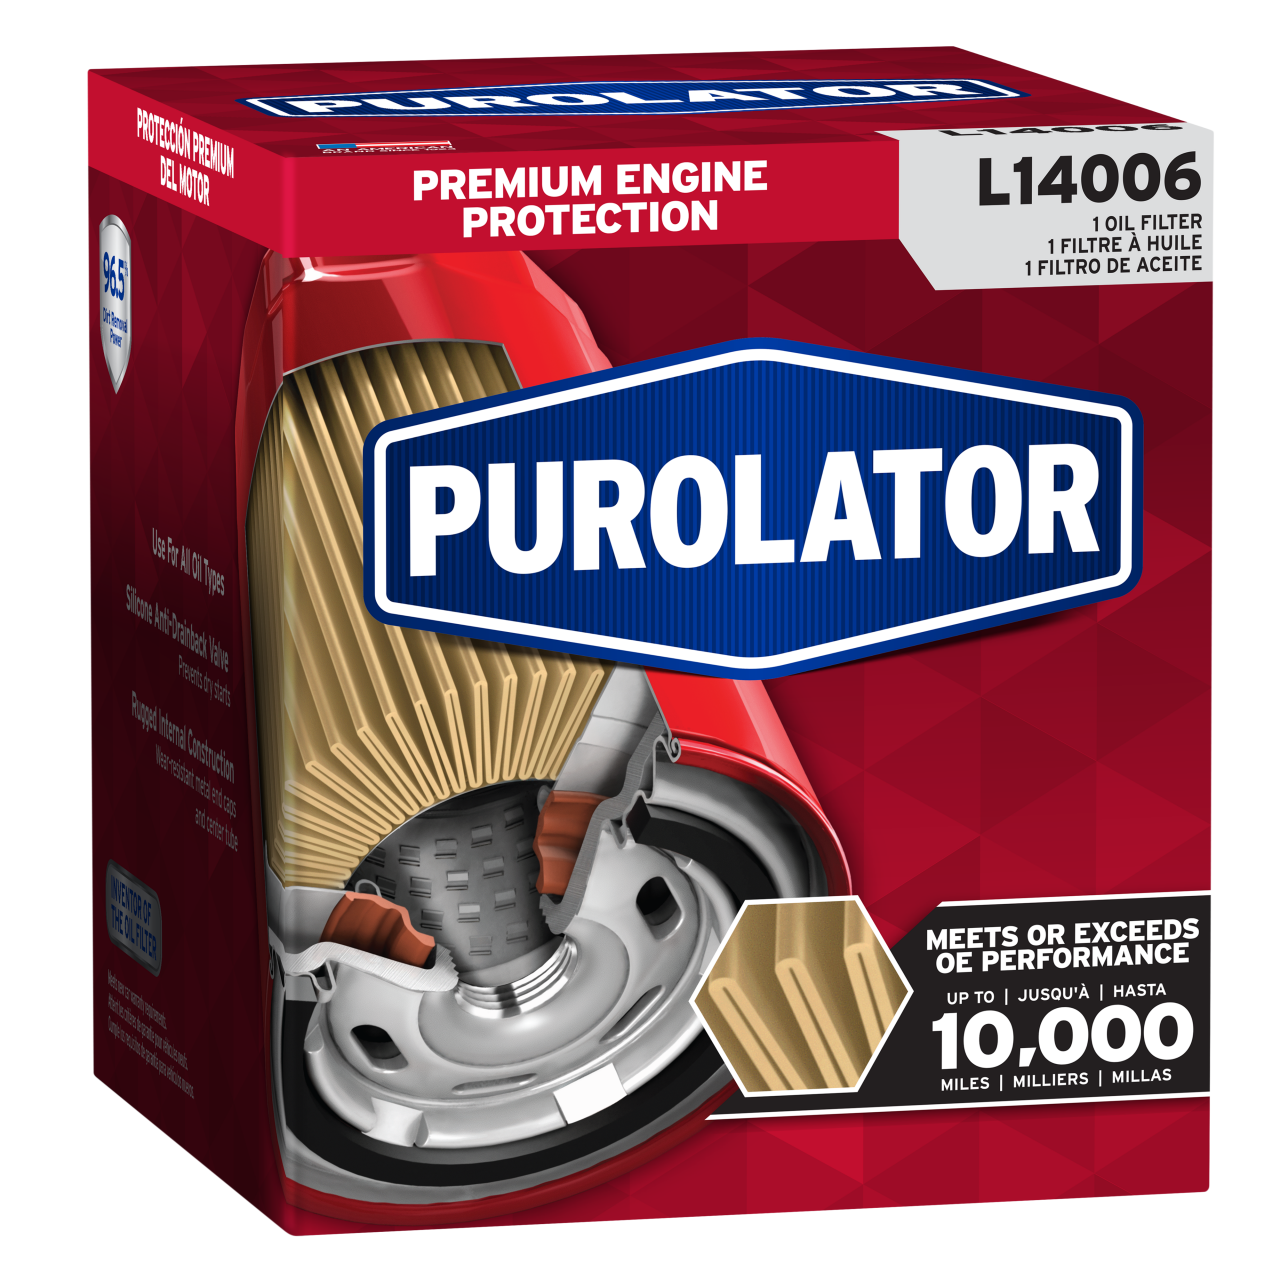 Idéale pour des conditions de conduite normales, la gamme classique de filtres à huile Purolator continue d’être considérée comme un filtre à huile de premier ordre pour la protection du moteur.